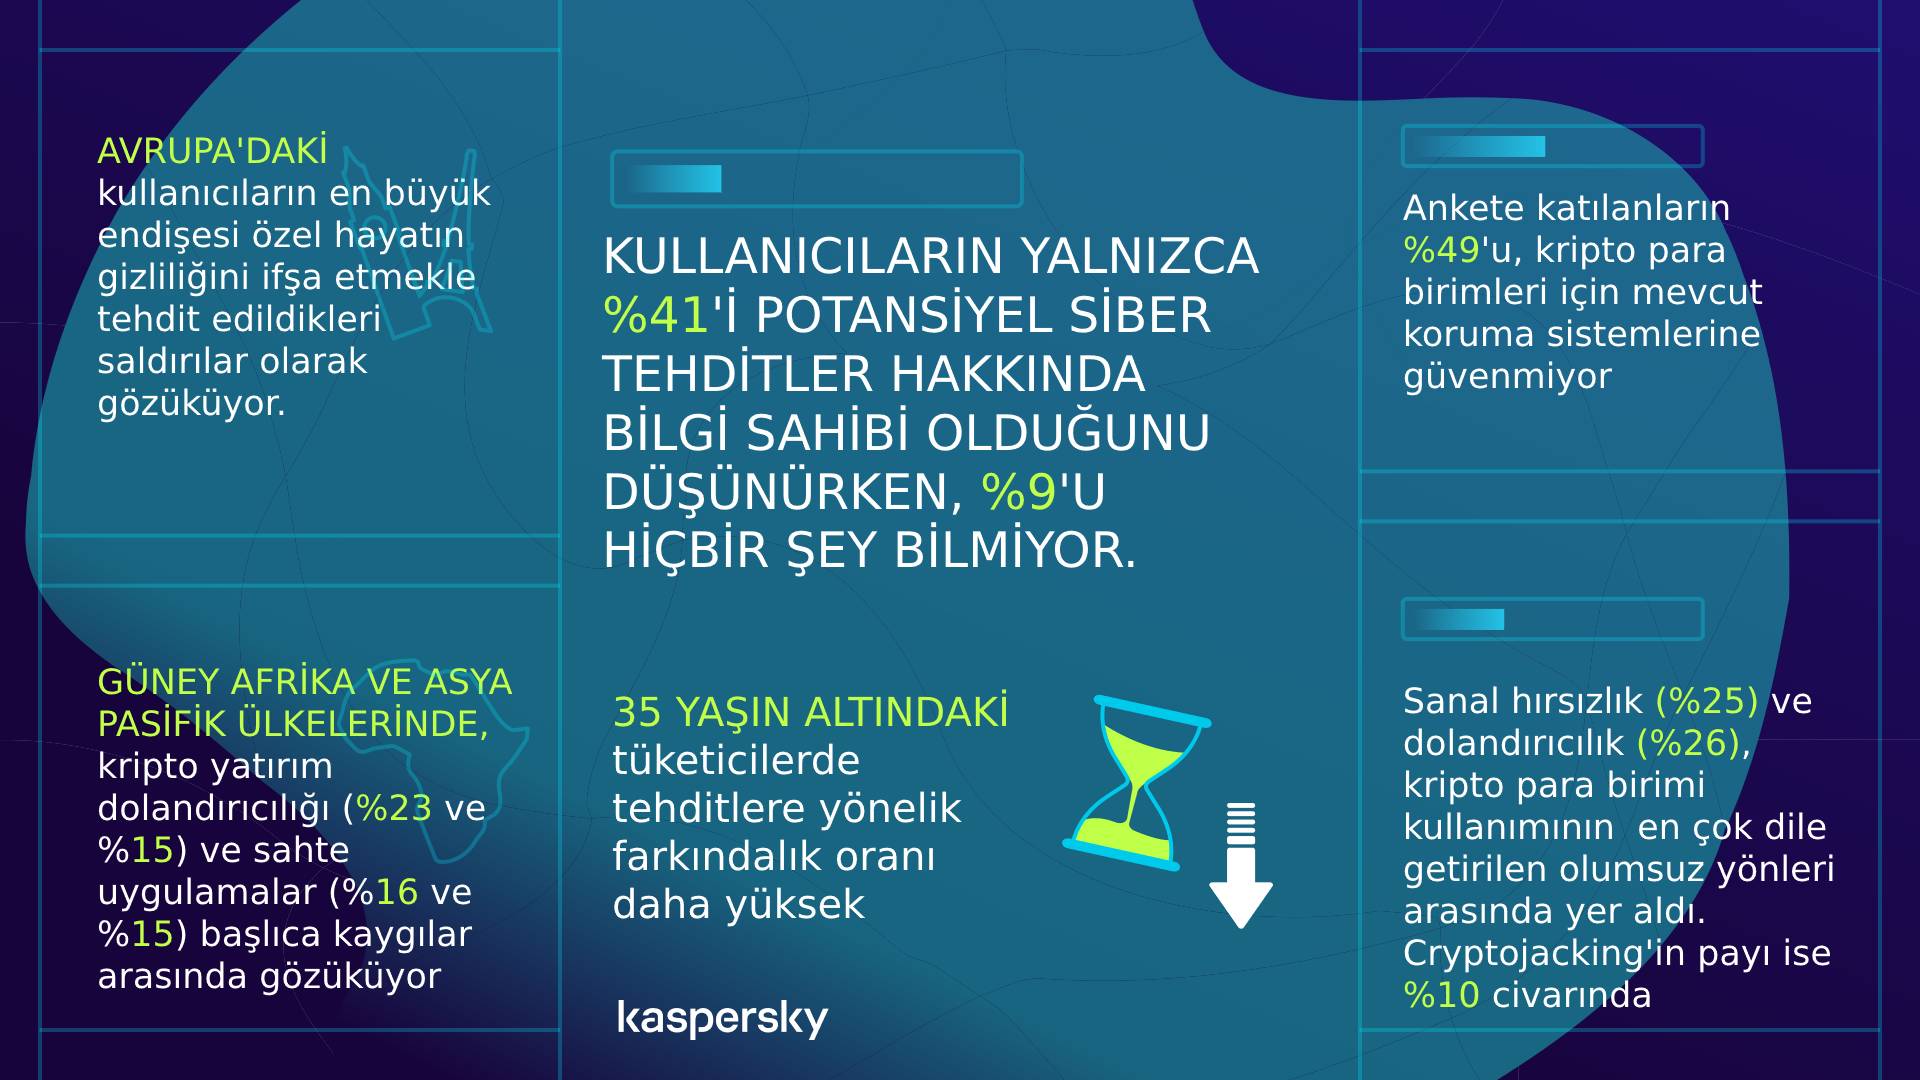 Kaspersky, Türkiye’de kripto para birimi kullanıcı eğilimlerini araştırdı. Araştırmaya göre, Türkiye’deki kripto para kullanıcılarının yarısından fazlası siber suçlardan etkileniyor. 